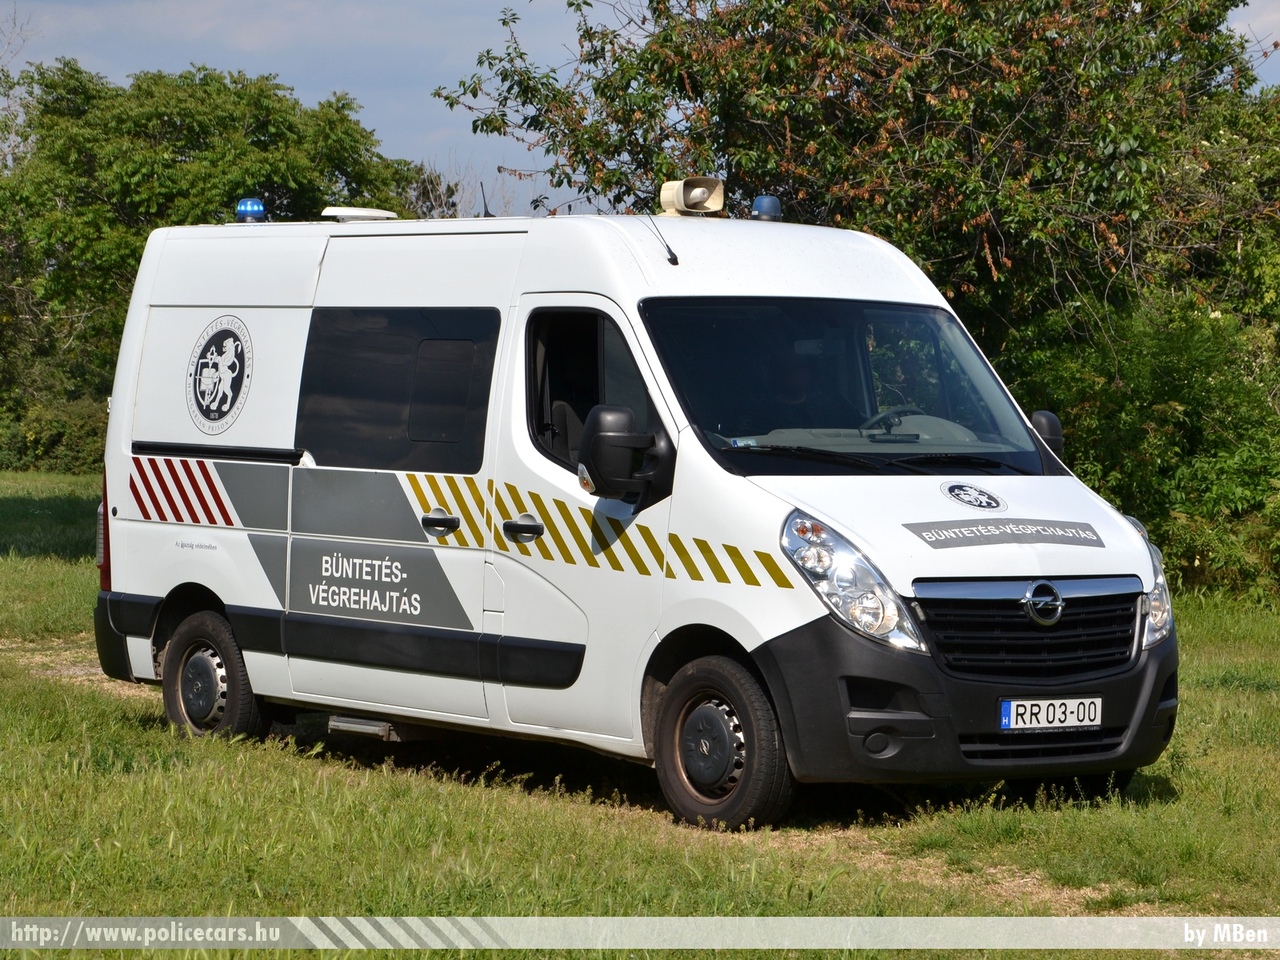 Renault Master, fotó: MBen
Keywords: BV magyar Magyarország Hungary hungarian prison RR03-00 Büntetés-végrehajtás